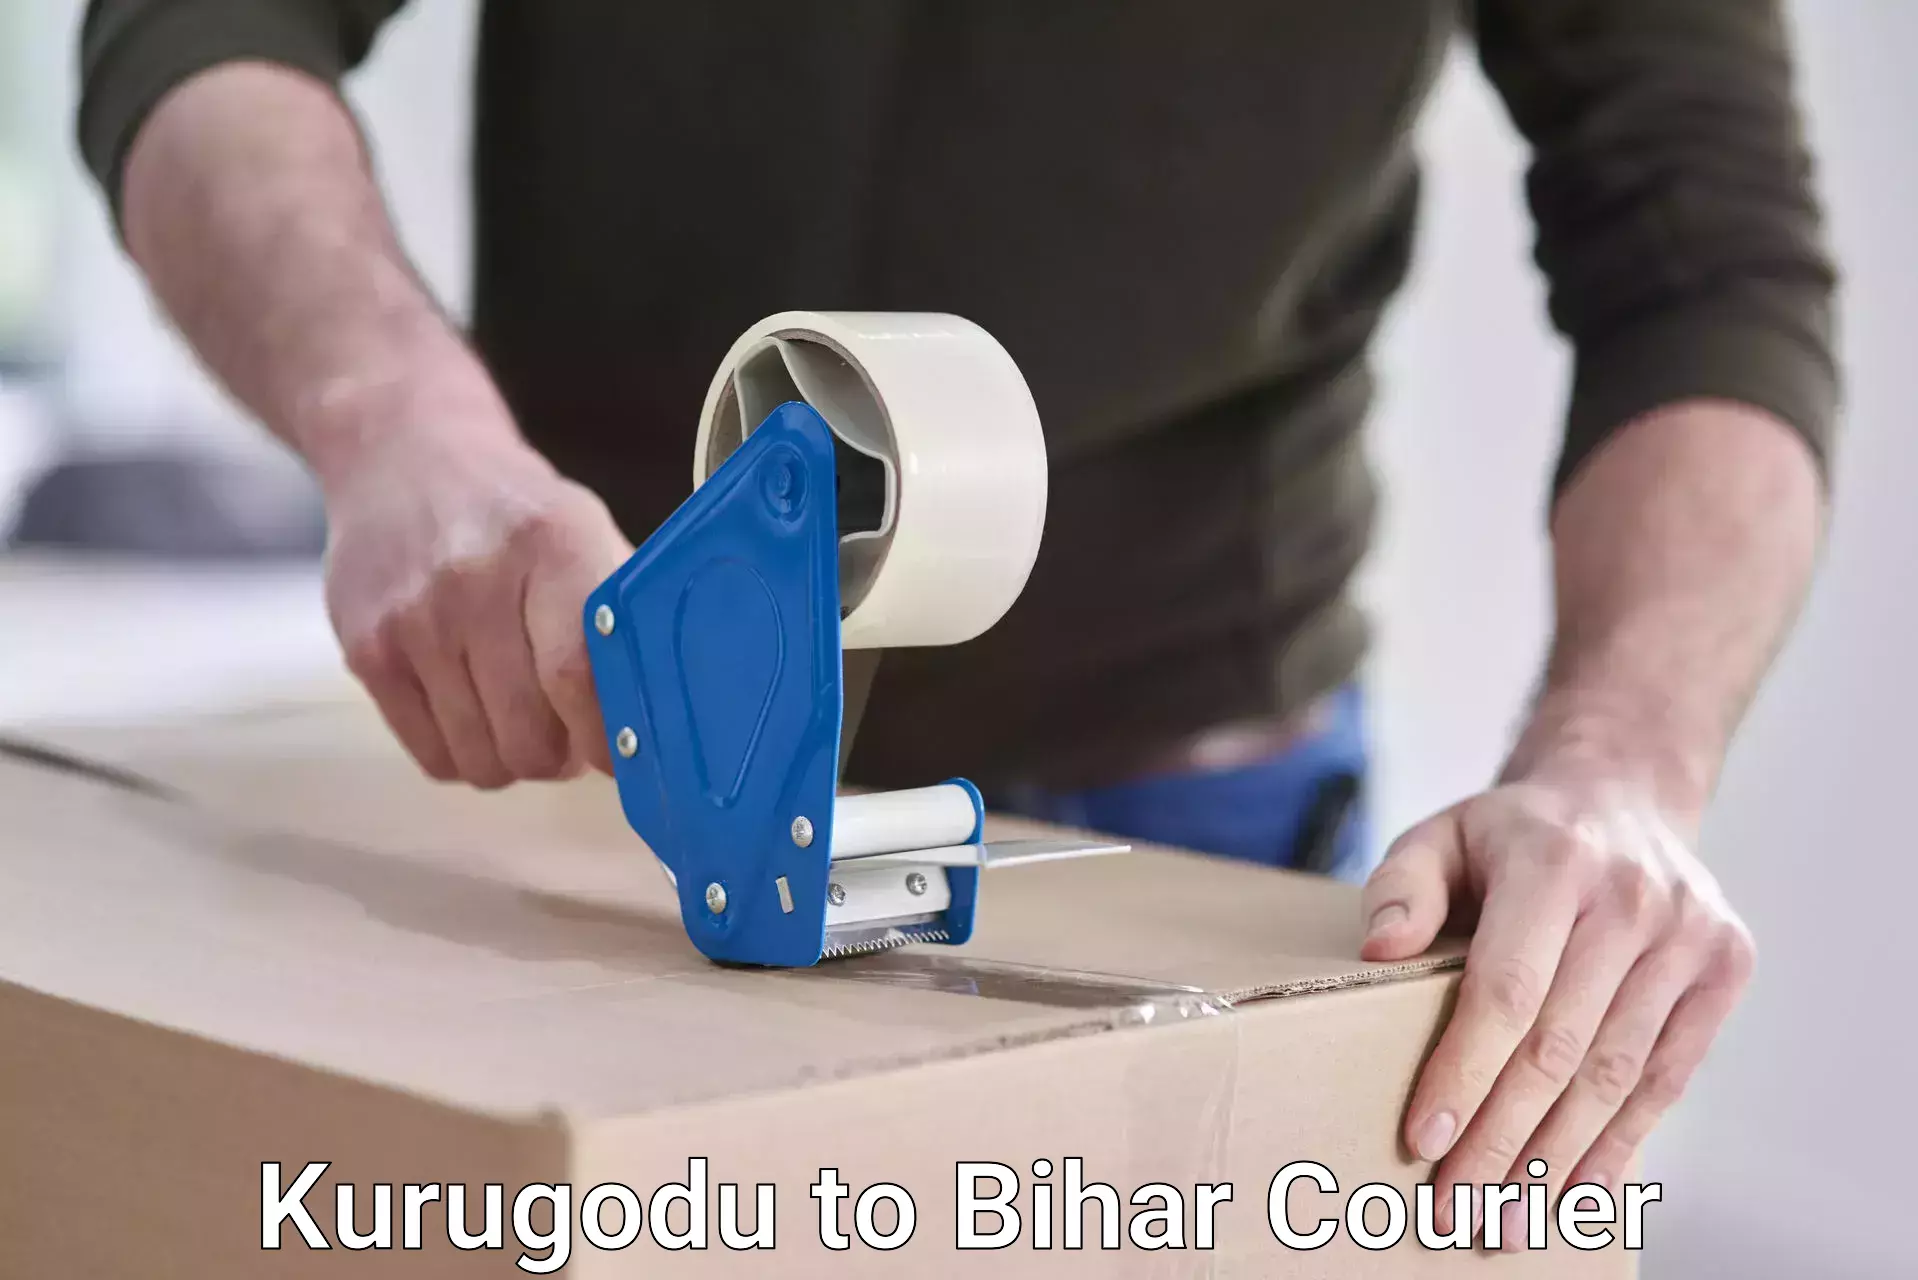 Modern courier technology Kurugodu to Bihar